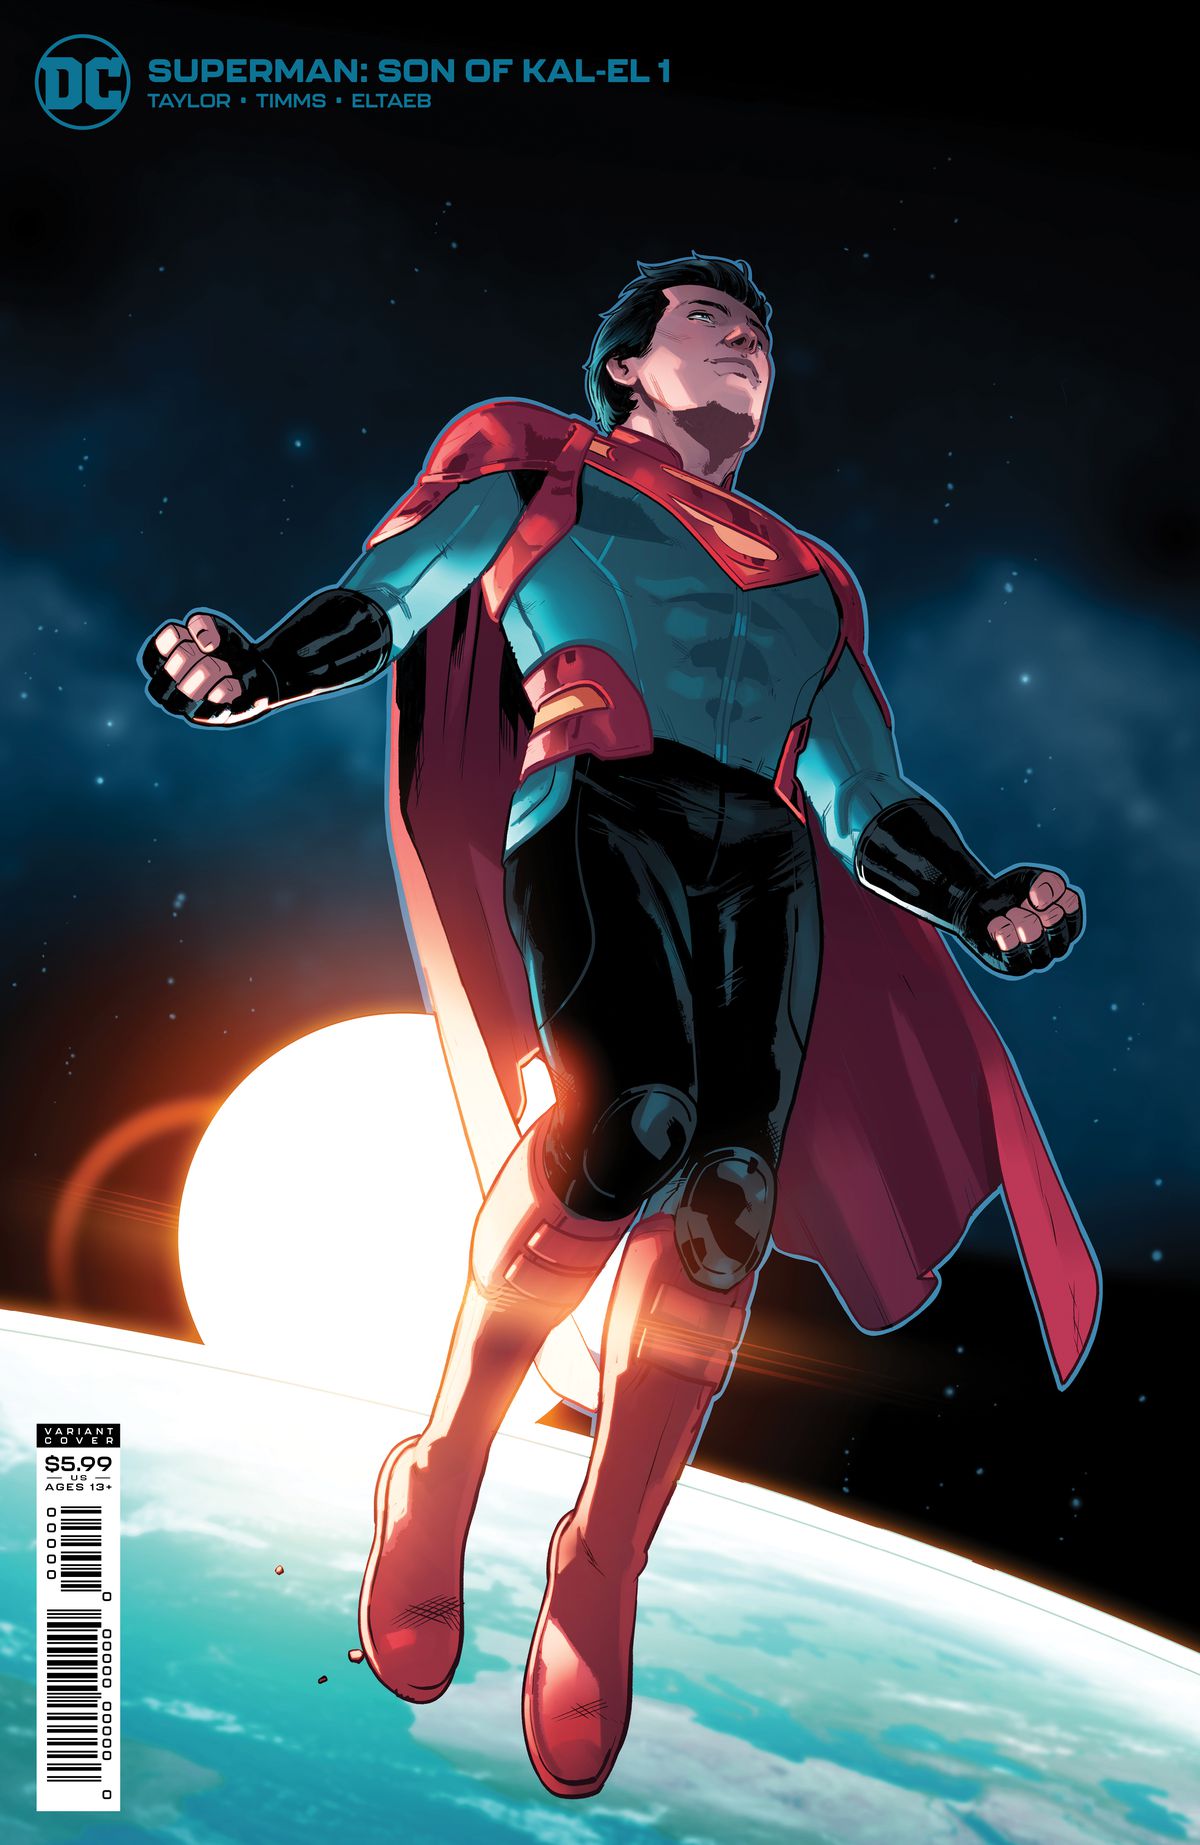 Superman: Son of Kal-El Art